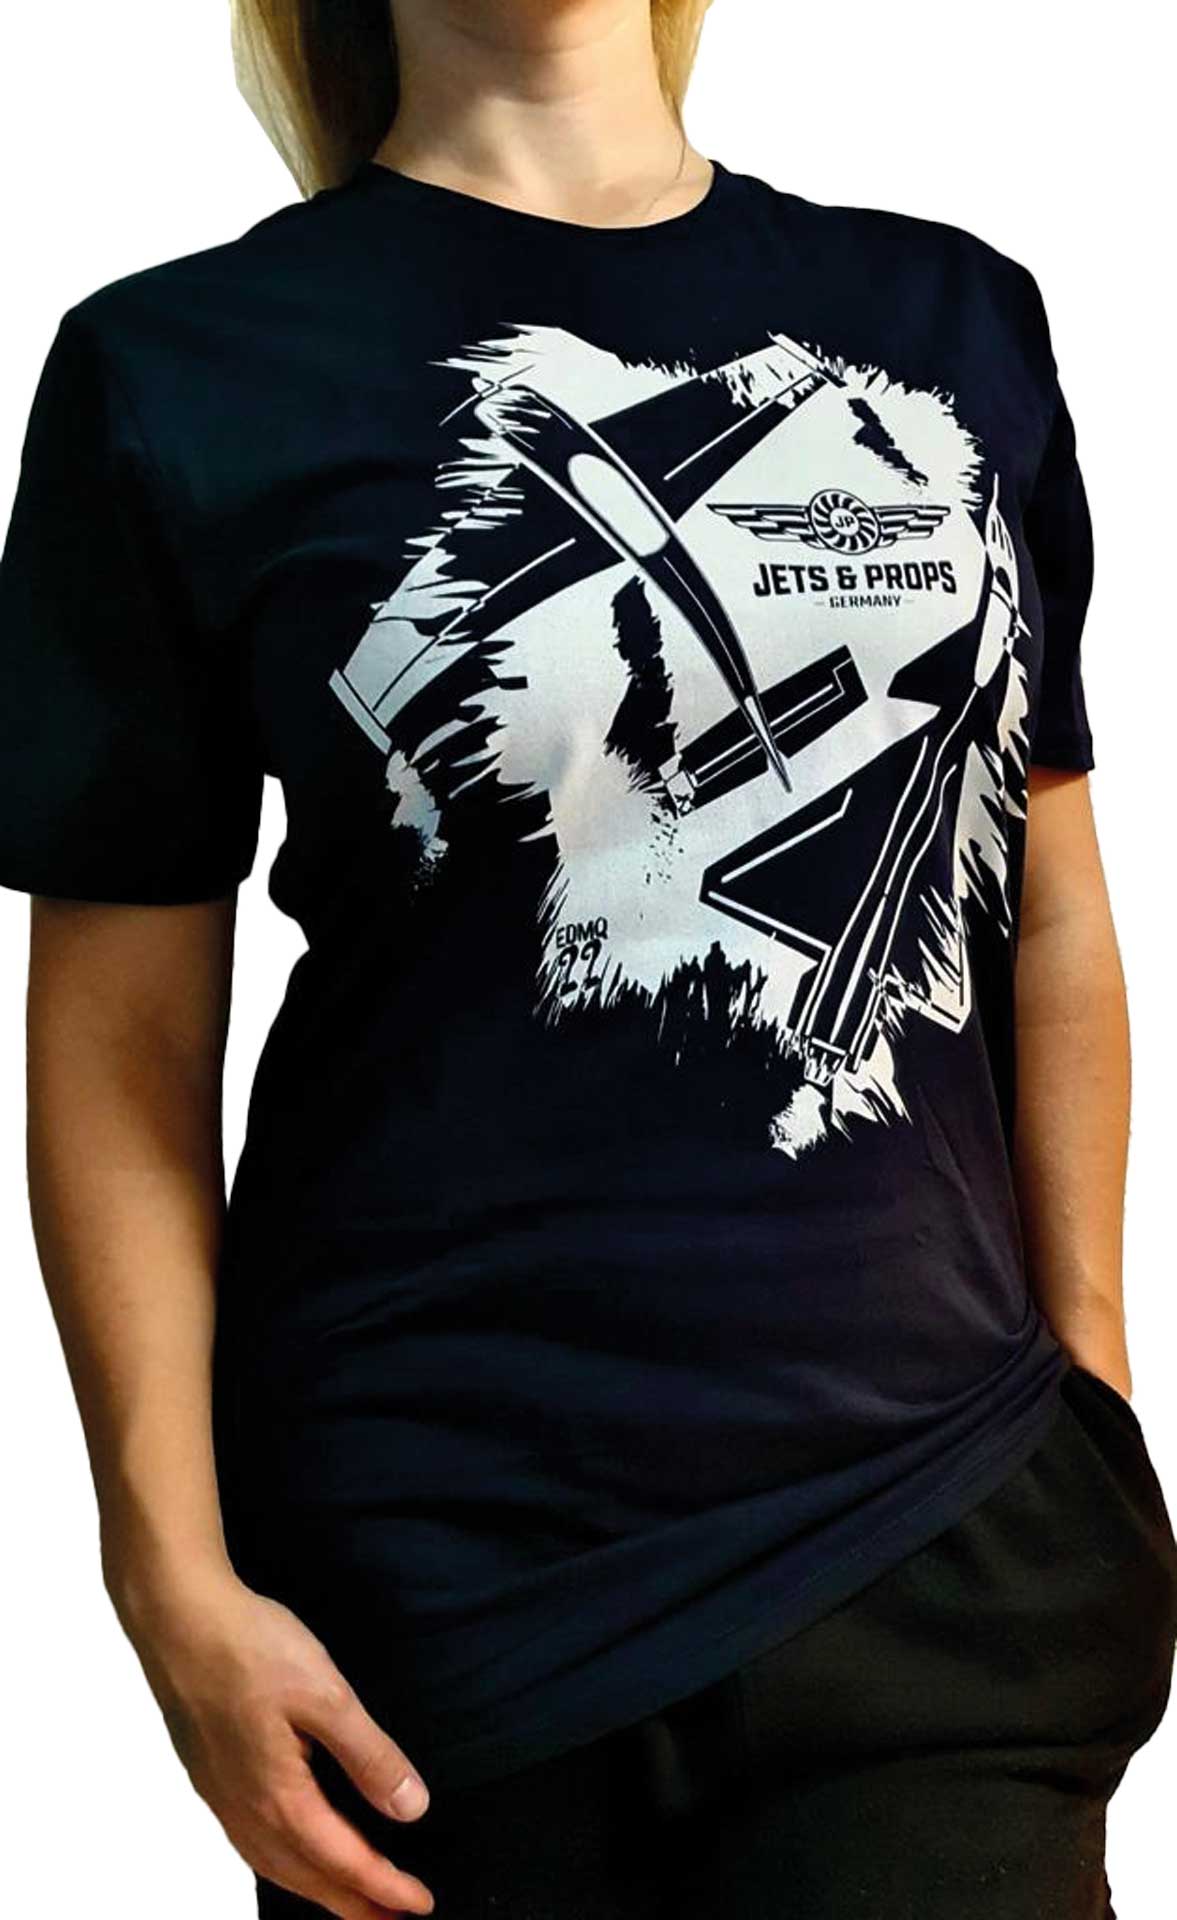 DIVERSE T-Shirt "L" Jets & Props grunge big 400, Premium, Navy, Digitaldirektdruck